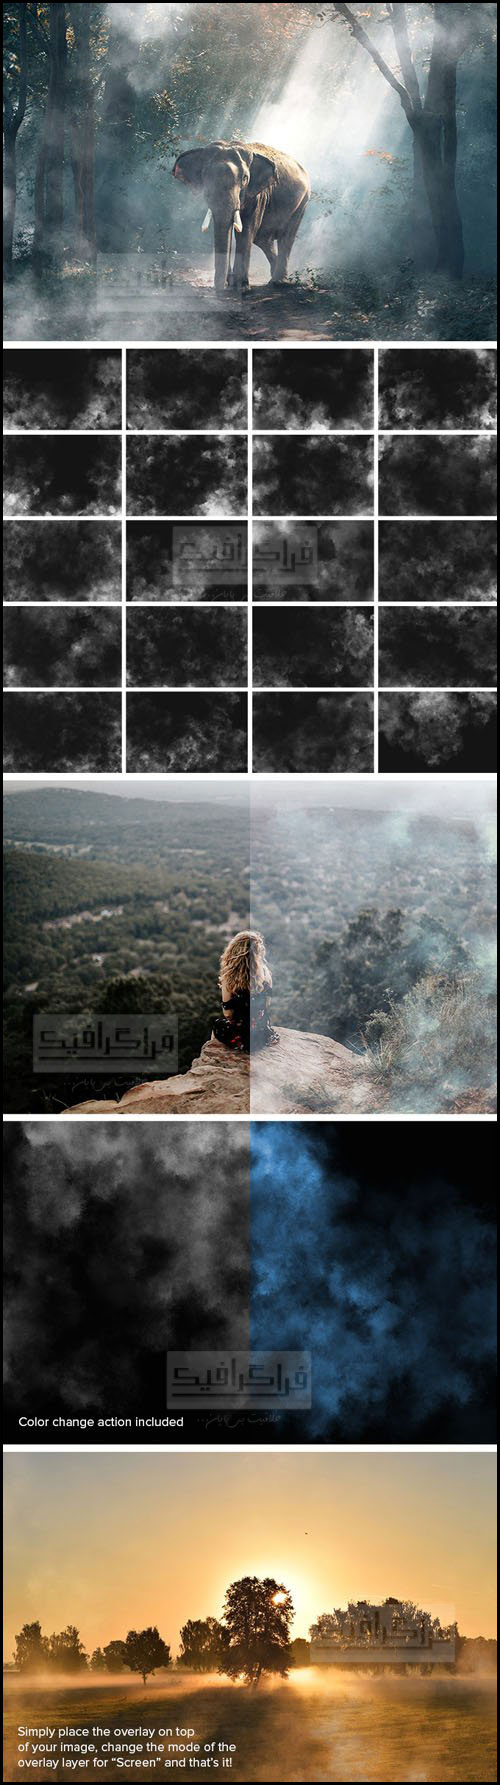 دانلود تصاویر افکت مه کیفیت بالا - شماره 2